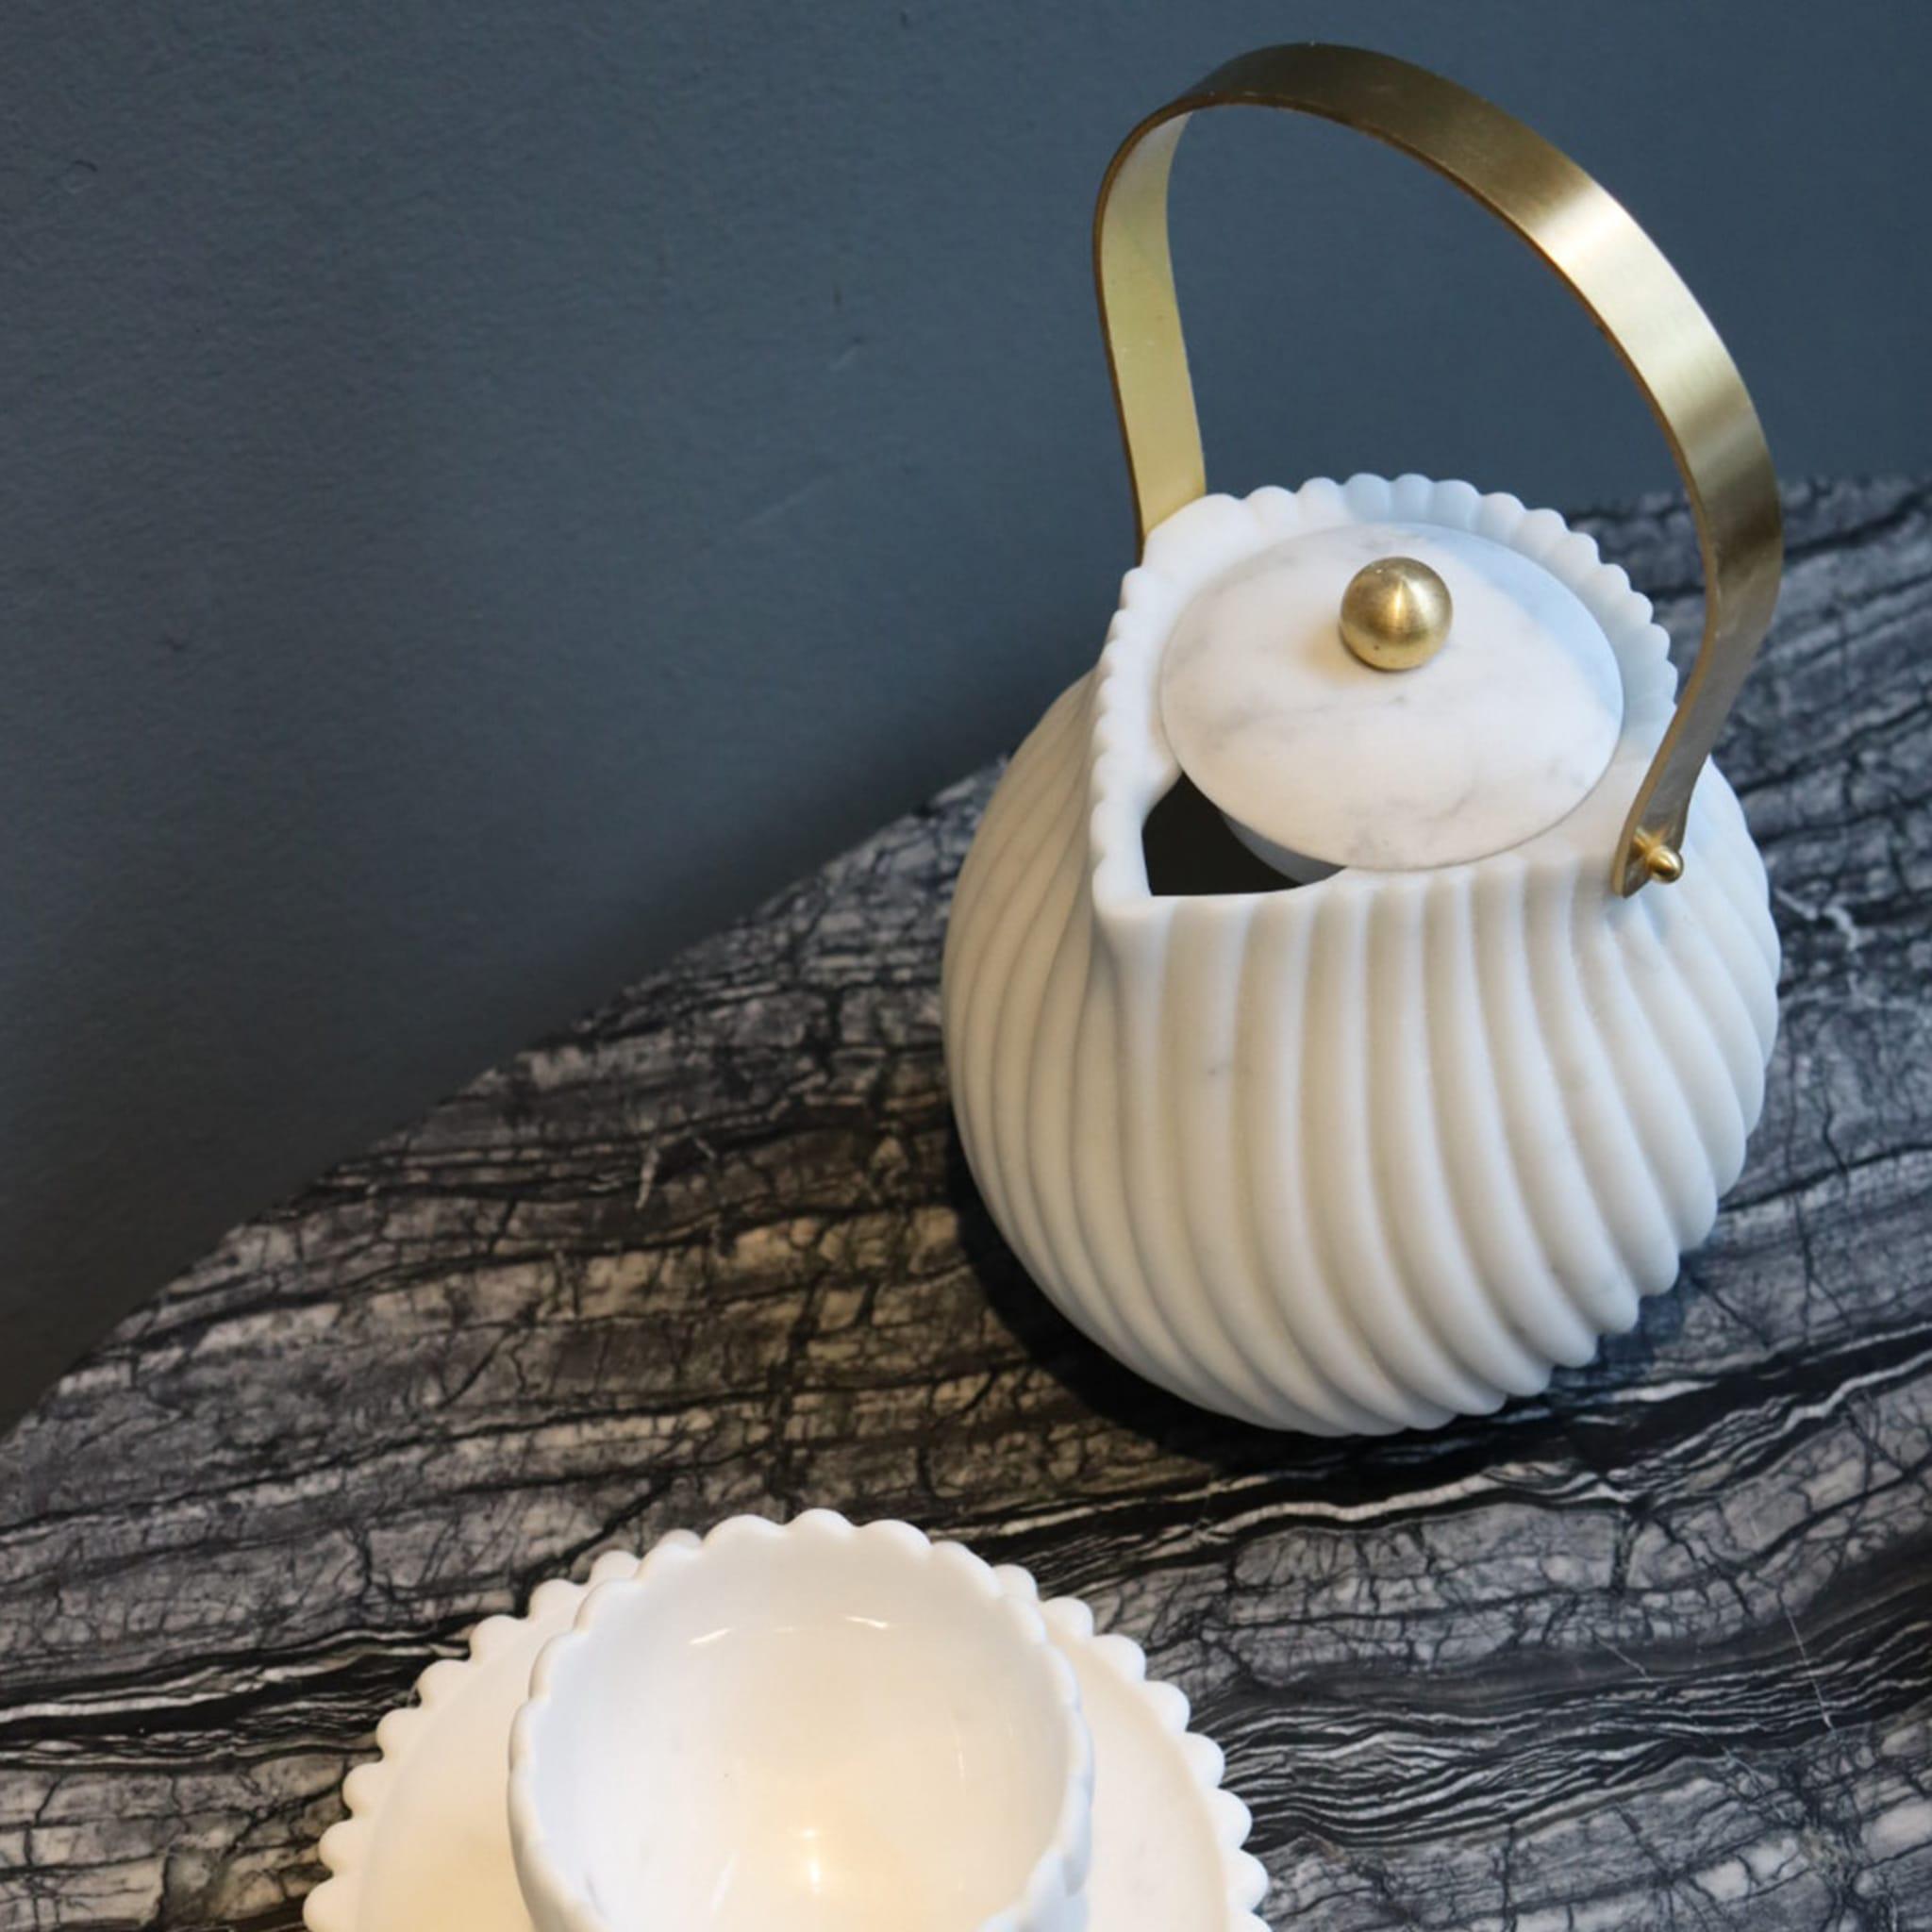 Dieses exquisite Set ist von der klassischen britischen Tradition des Afternoon Tea inspiriert und wurde aus einer Kombination von edlen Materialien hergestellt: Marmor und Messing. Das Set besteht aus einer Zuckerdose, zwei Teetassen mit